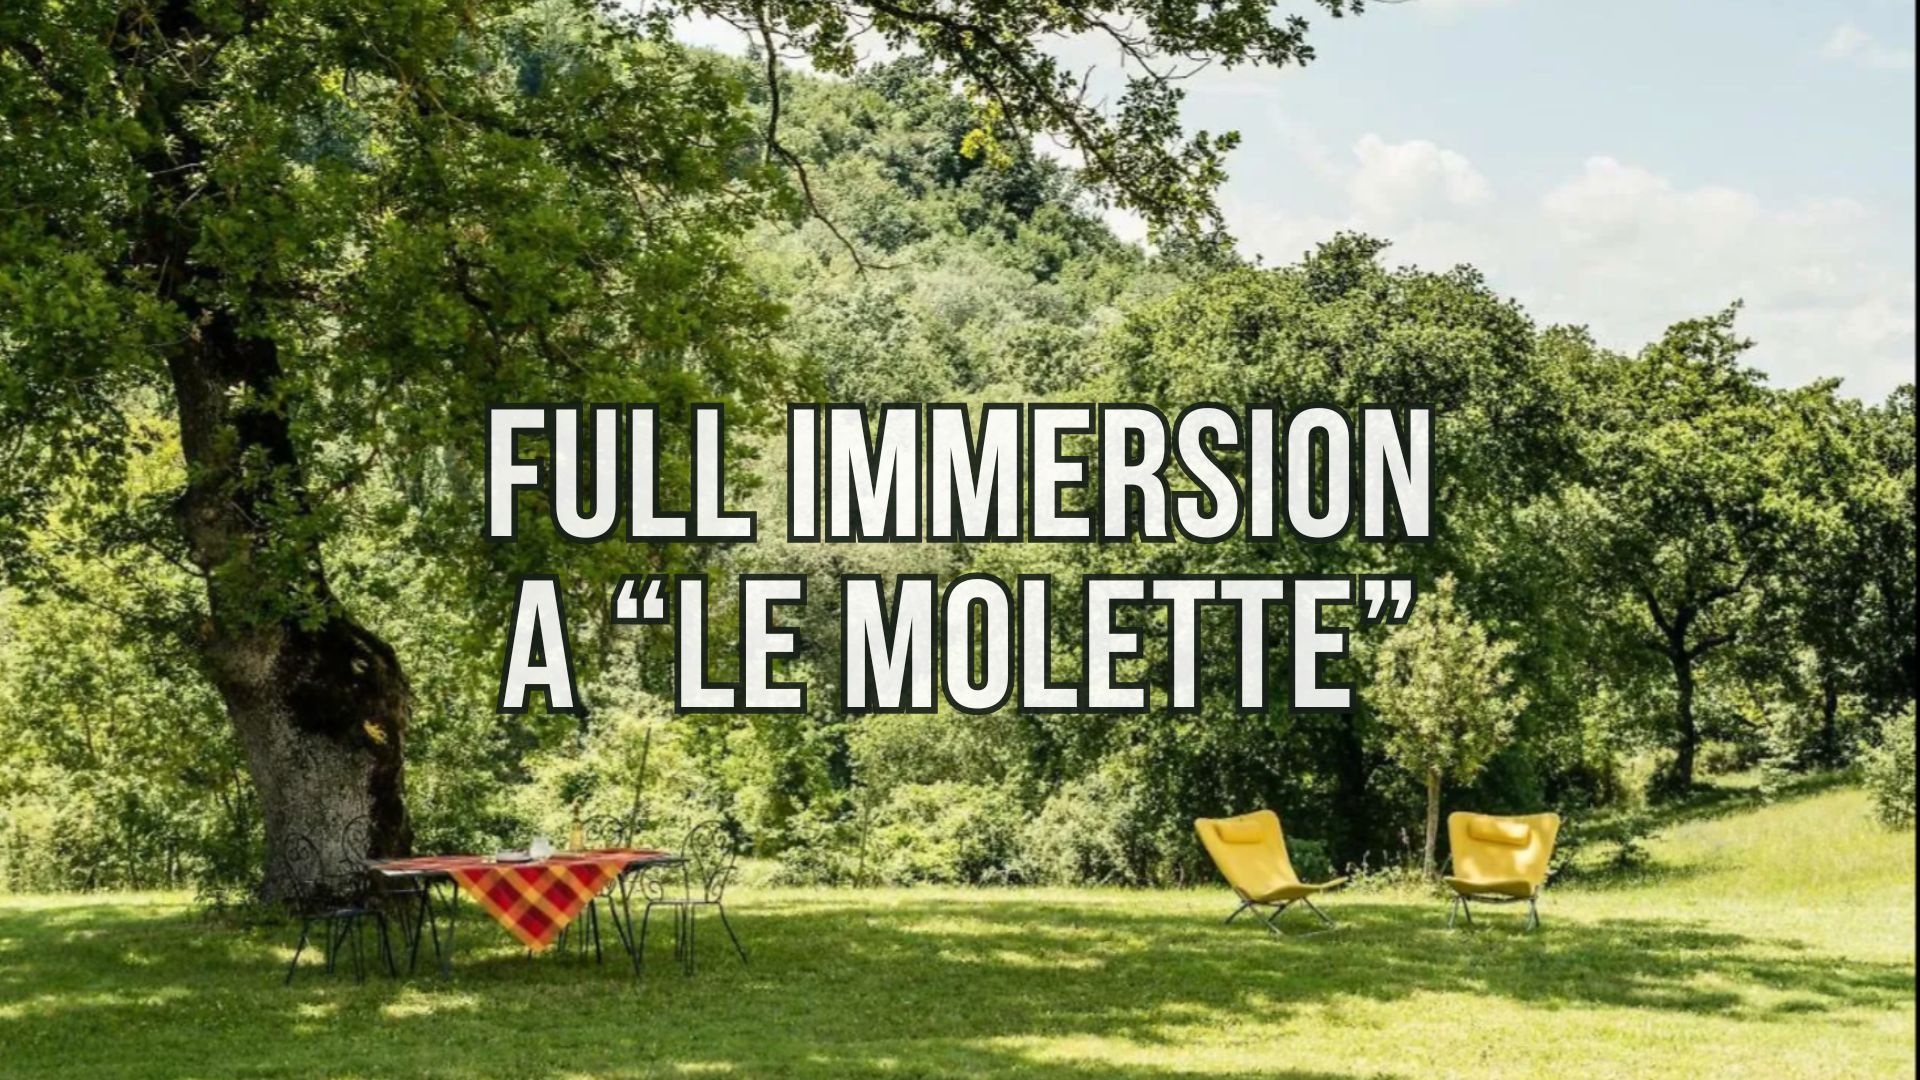 Inmersión total en la visión natural en Le Molette del 24 al 28 de abril